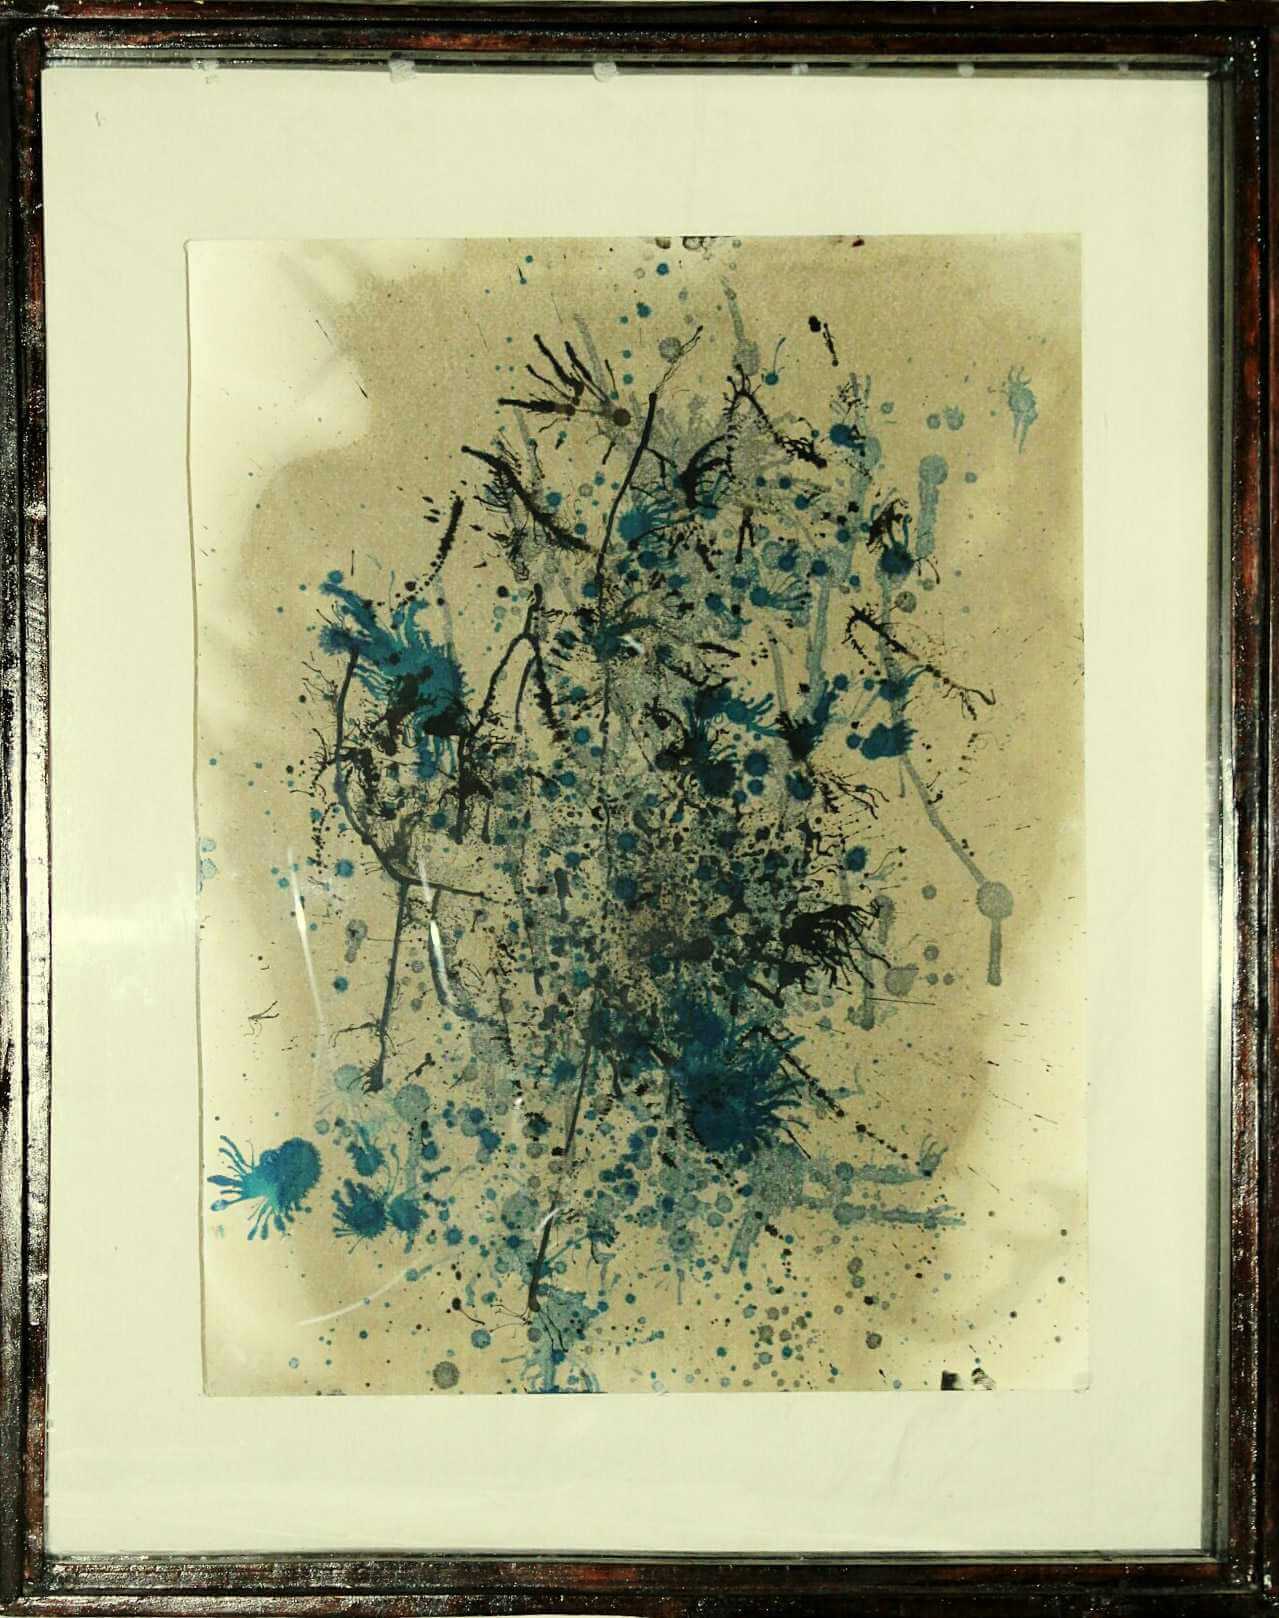 Obra de arte: Mantenimiento #3 por S.P. Balcarcel. Estilo: Abstracto. Técnica: Mixta (Aceite quemado y tinta sobre papel acuarela), abstracción en manejo de colores fríos.